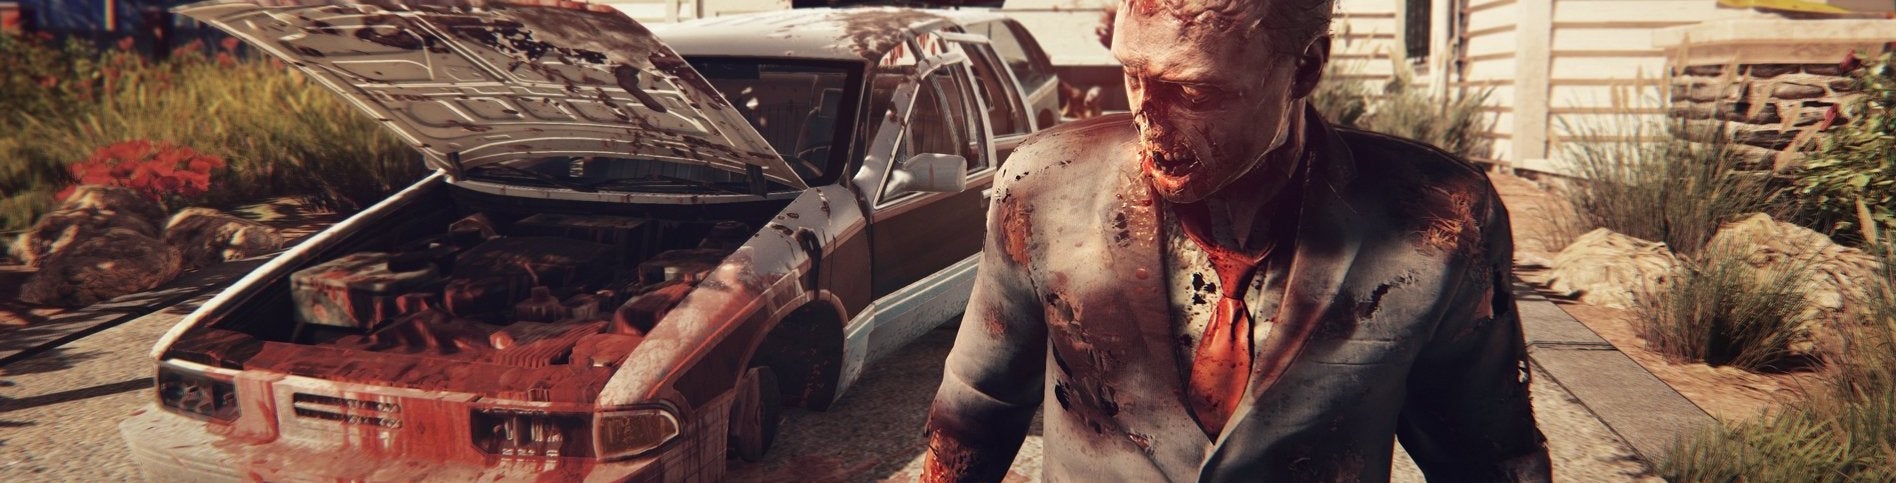 Image for Souvislá ukázka Dead Island 2 ničím nenadchne